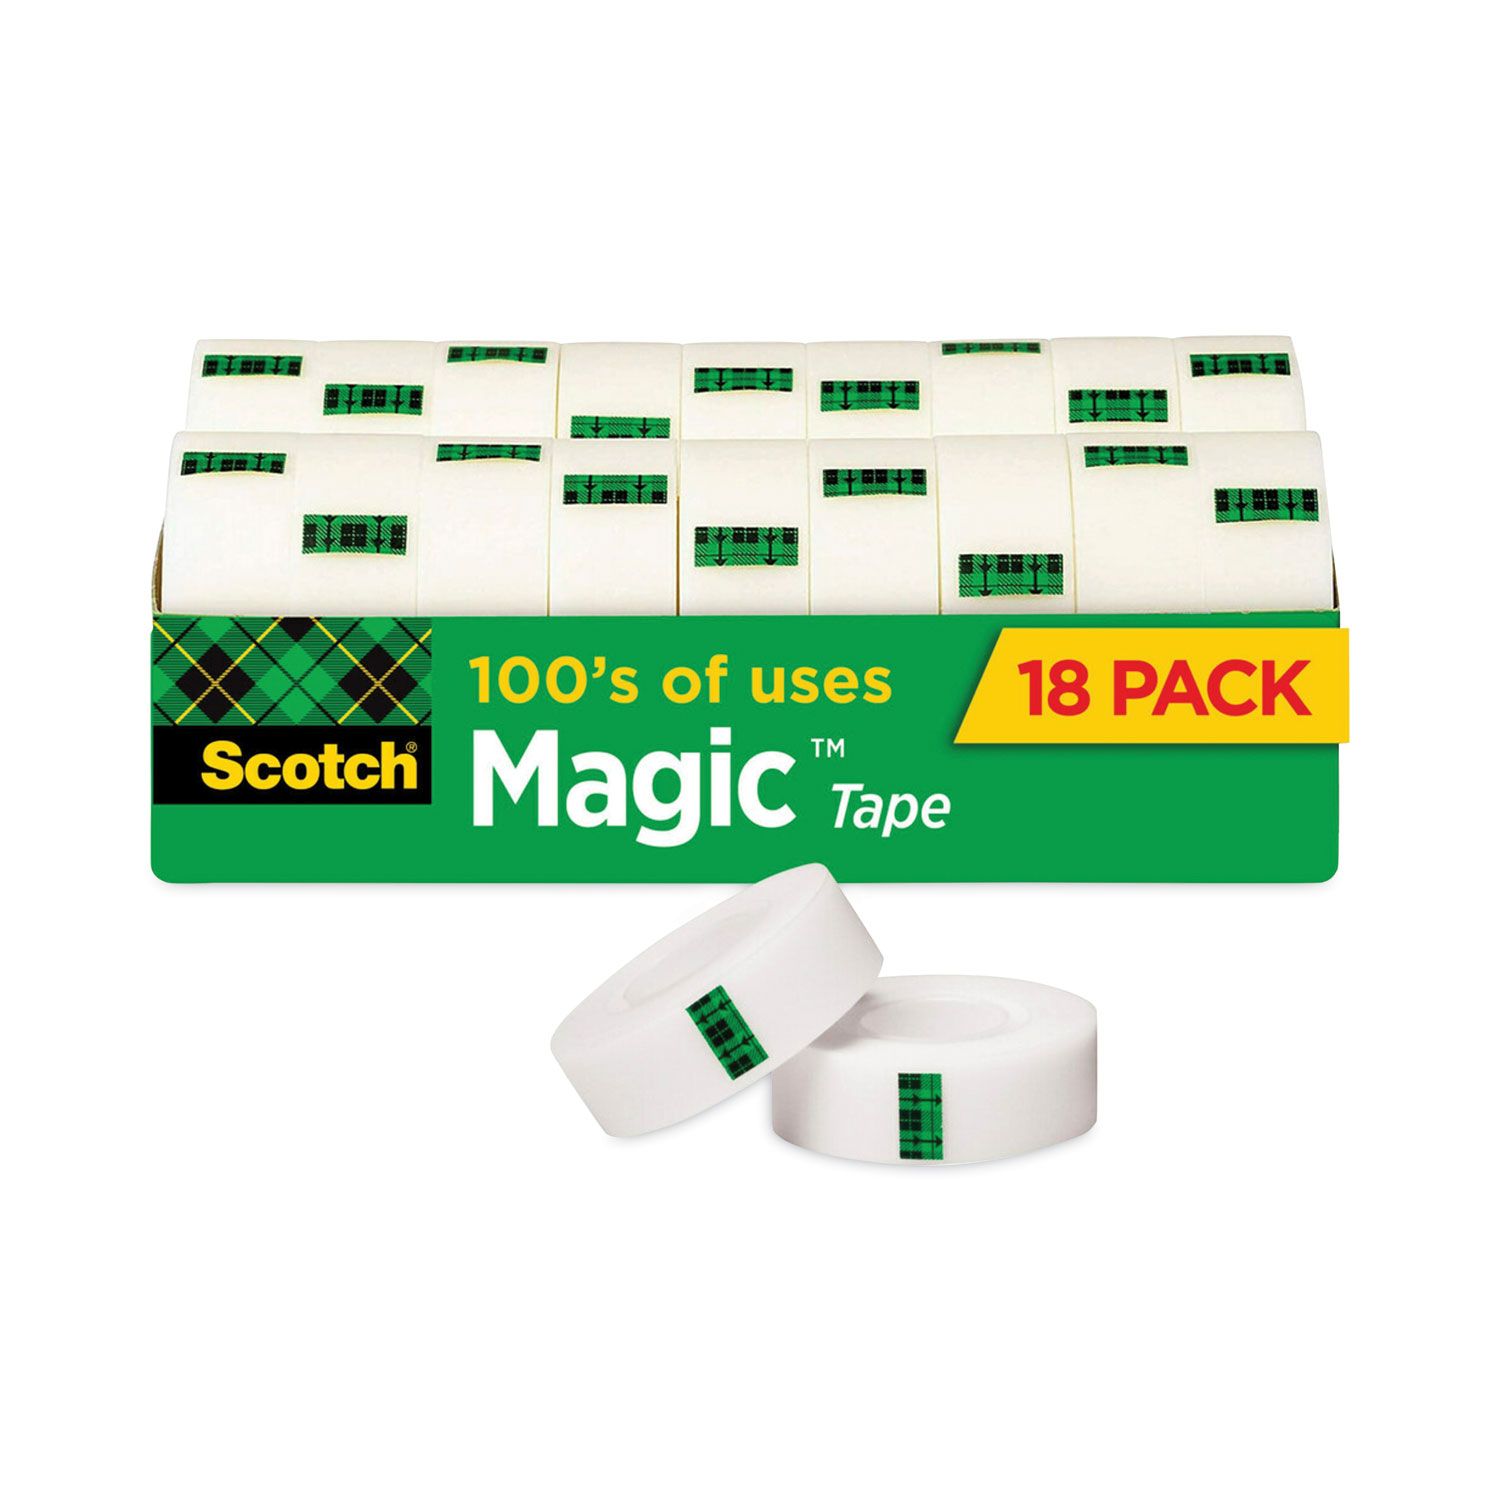 3M Scotch Magic Tape - 3 ct.